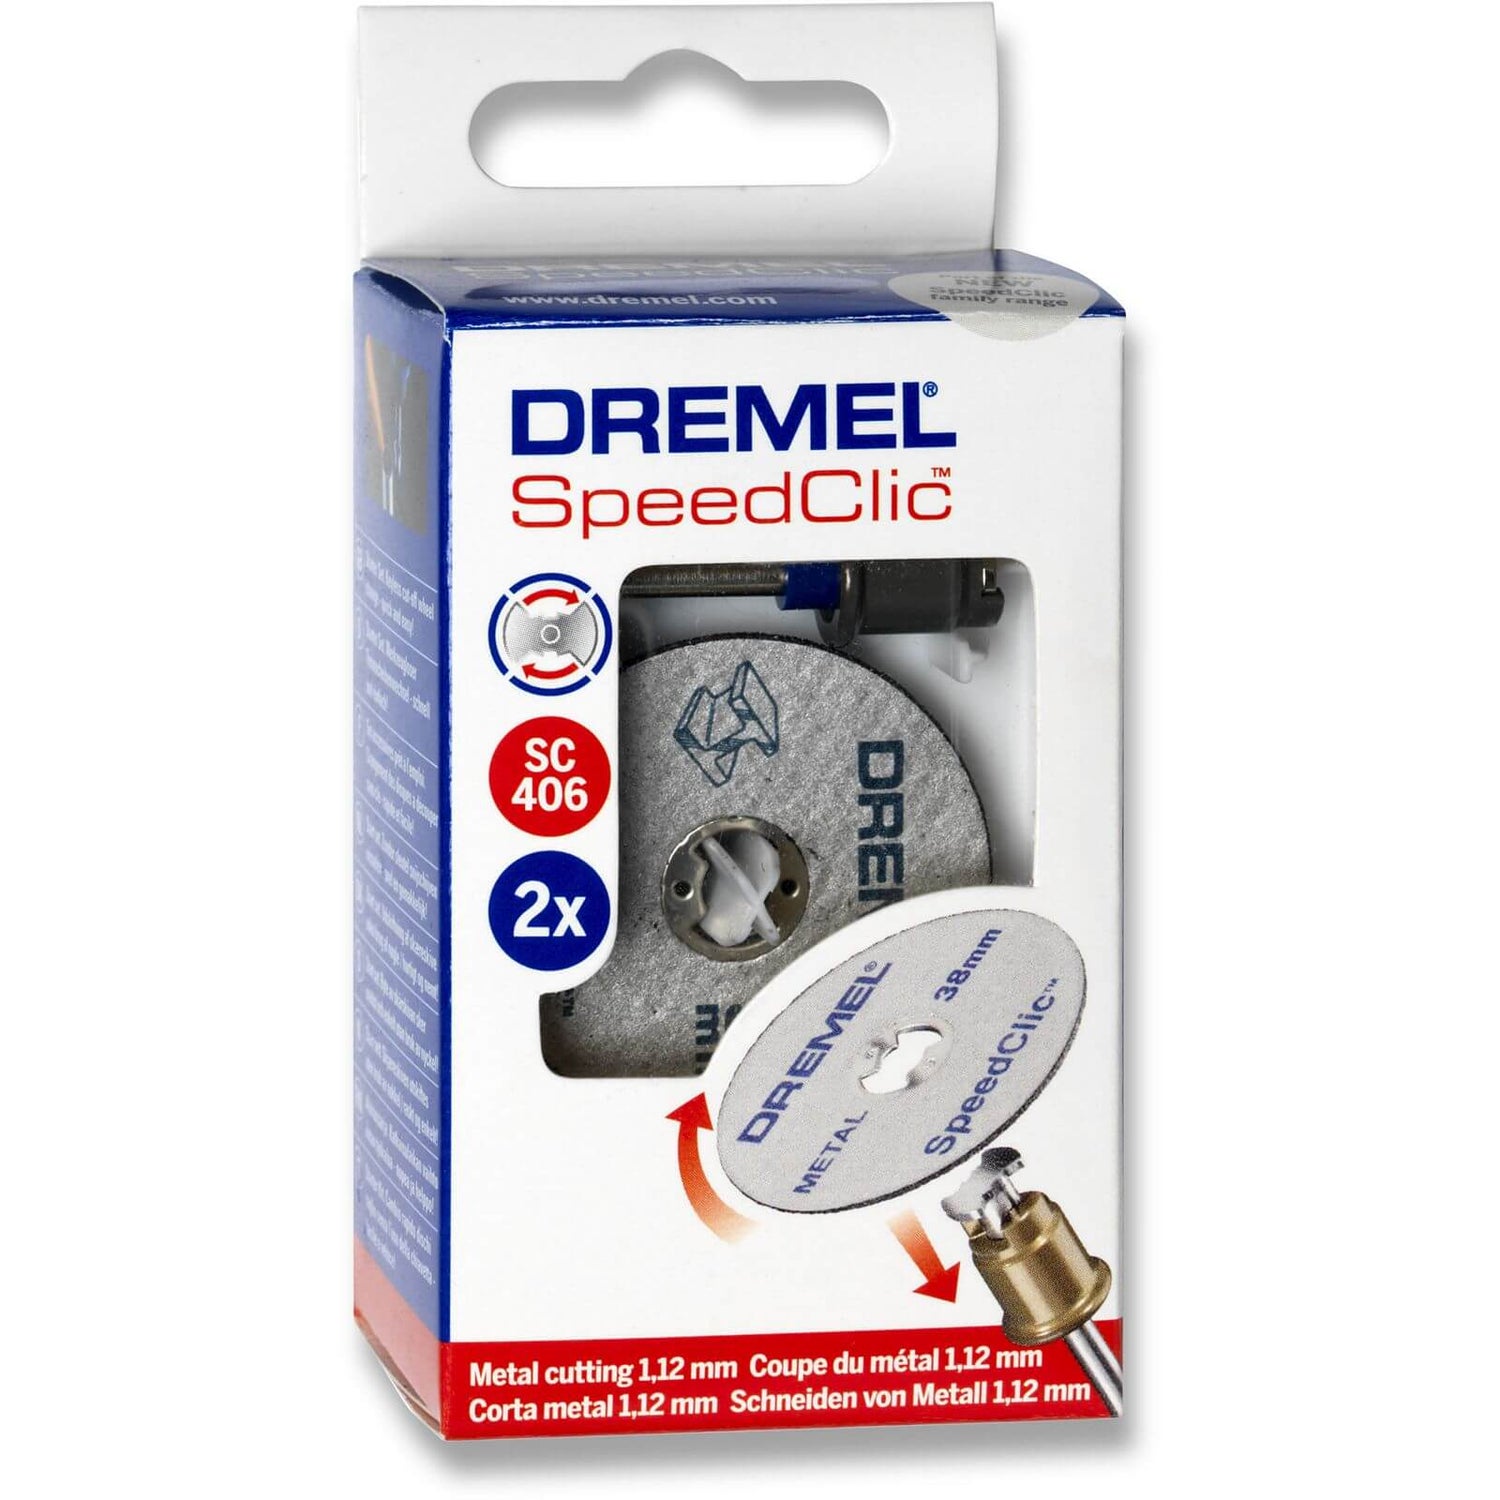 energi couscous eksistens Dremel SpeedClic Starter Kit 406S | Homebase